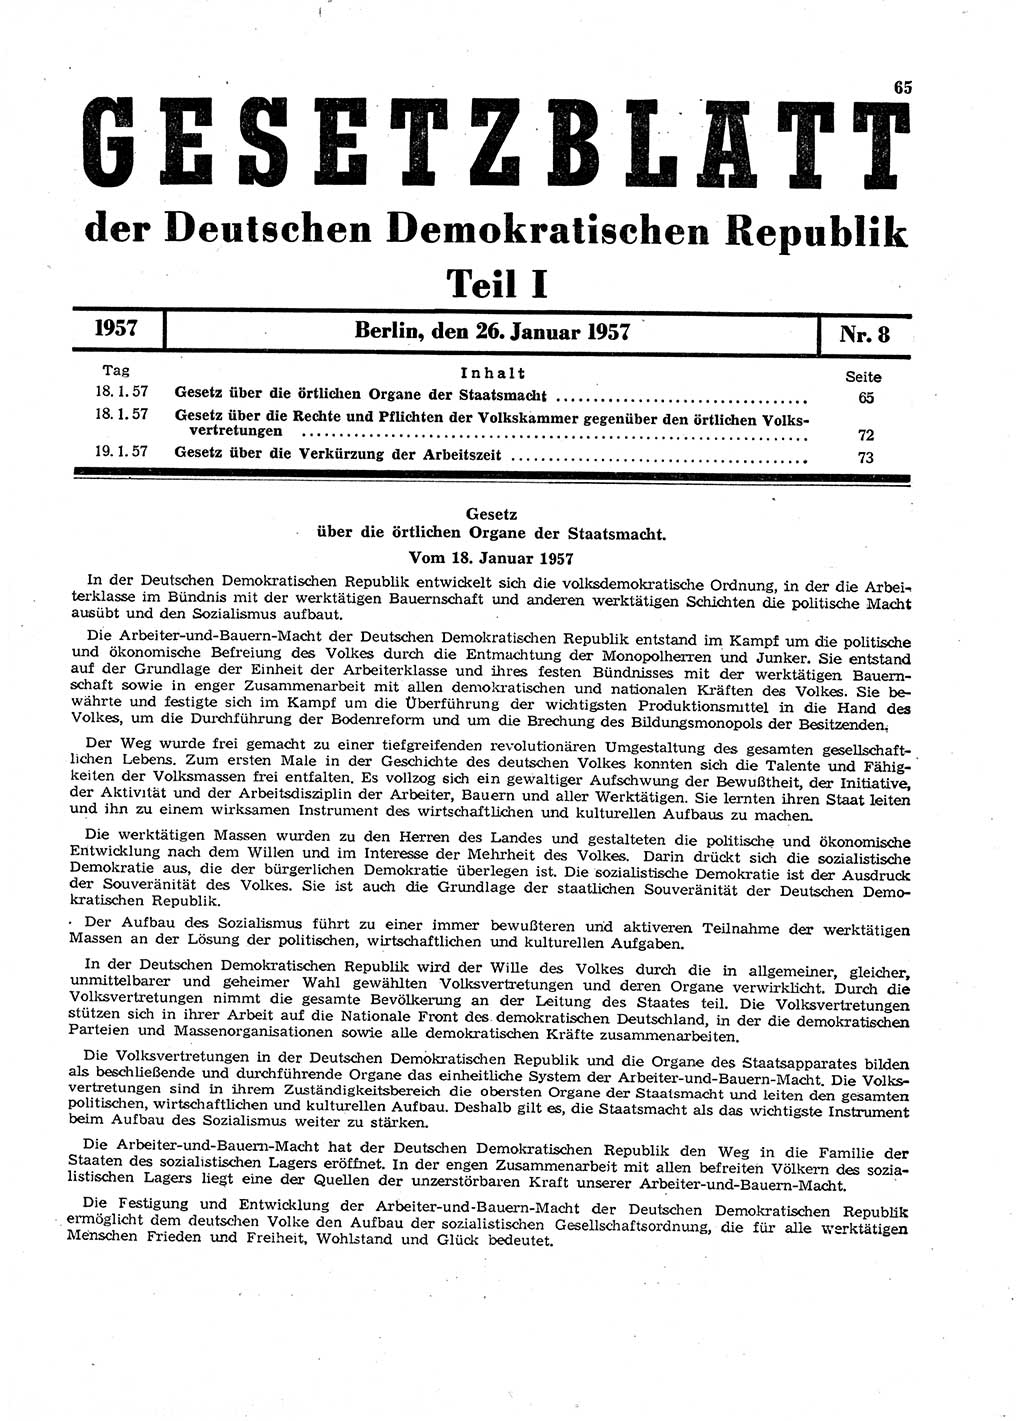 Gesetzblatt (GBl.) der Deutschen Demokratischen Republik (DDR) Teil Ⅰ 1957, Seite 65 (GBl. DDR Ⅰ 1957, S. 65)